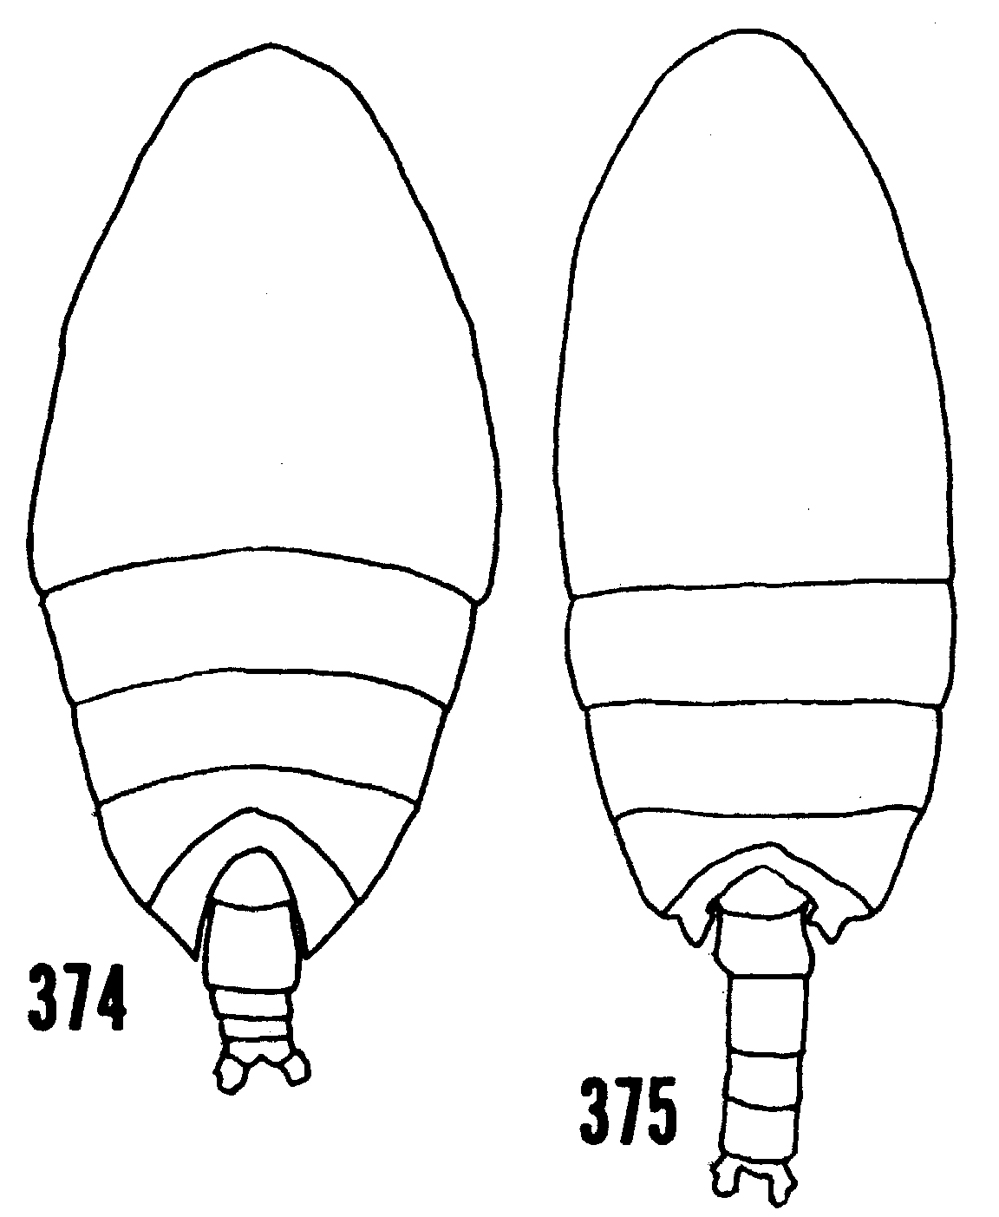 Espèce Scolecithrix danae - Planche 26 de figures morphologiques